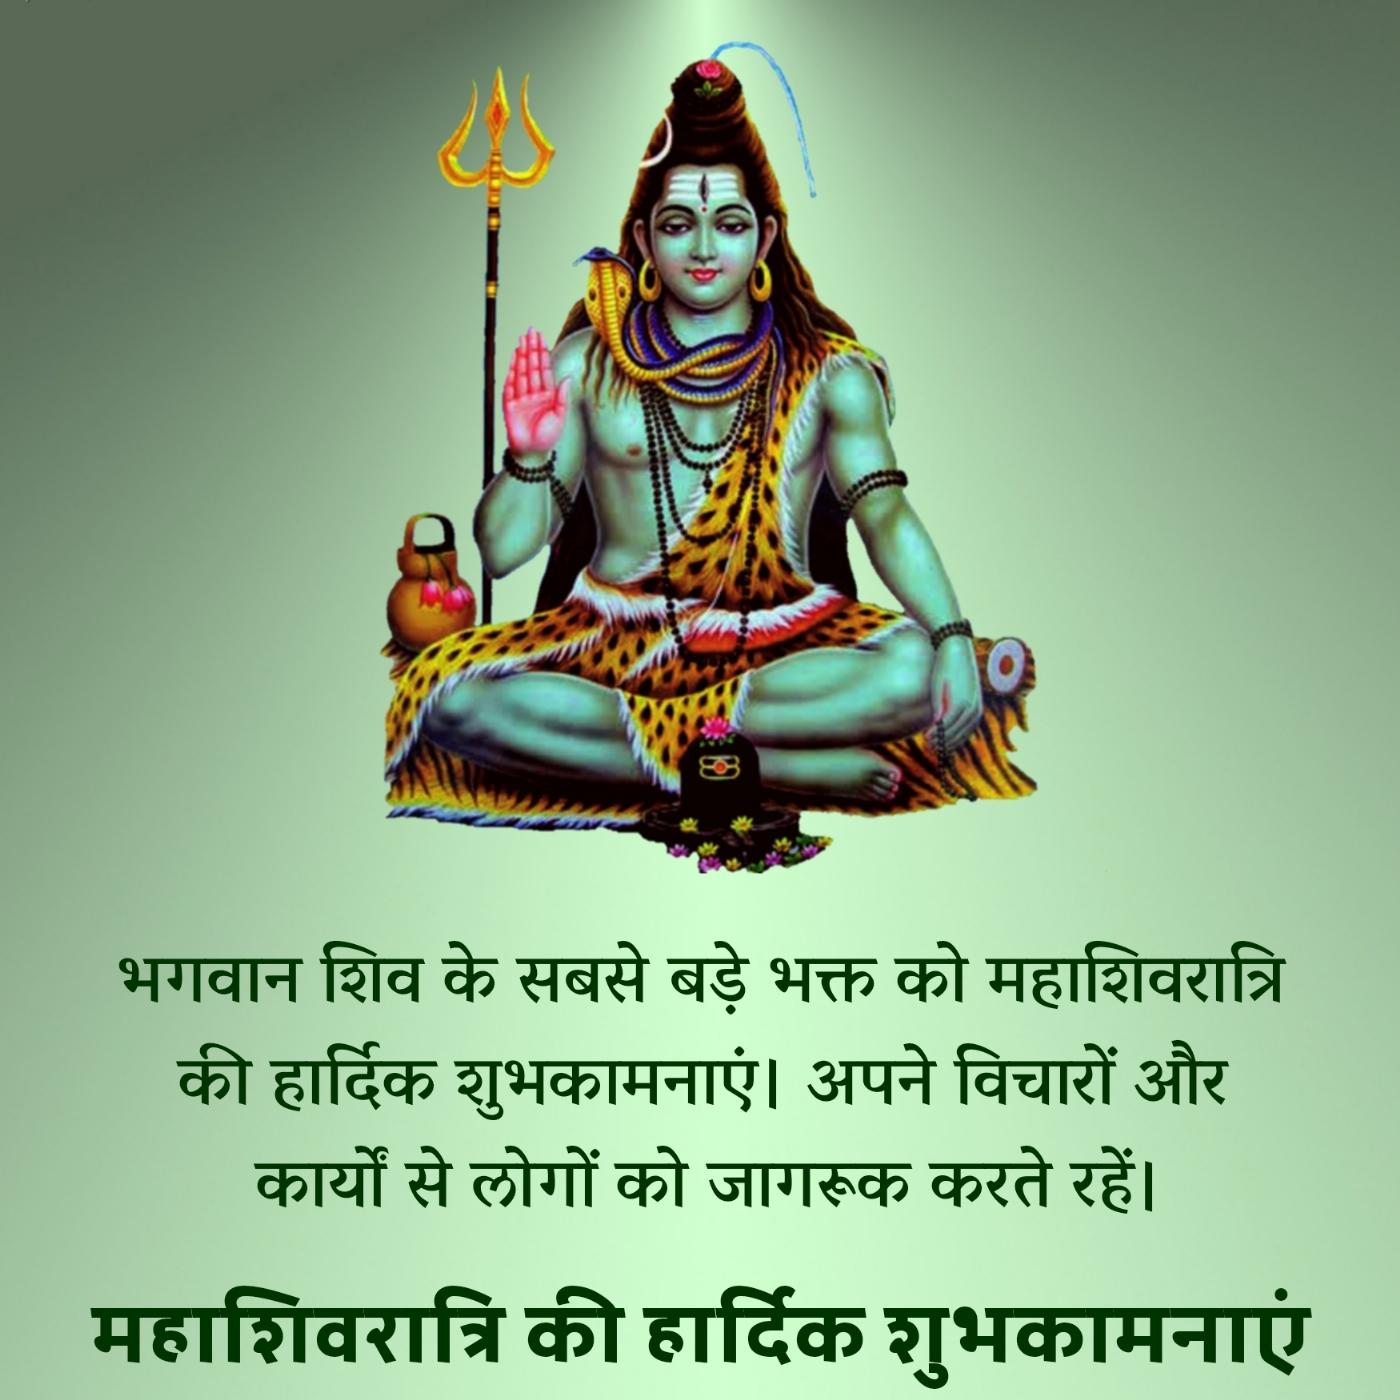 भगवान शिव के सबसे बड़े भक्त को महाशिवरात्रि की हार्दिक शुभकामनाएं